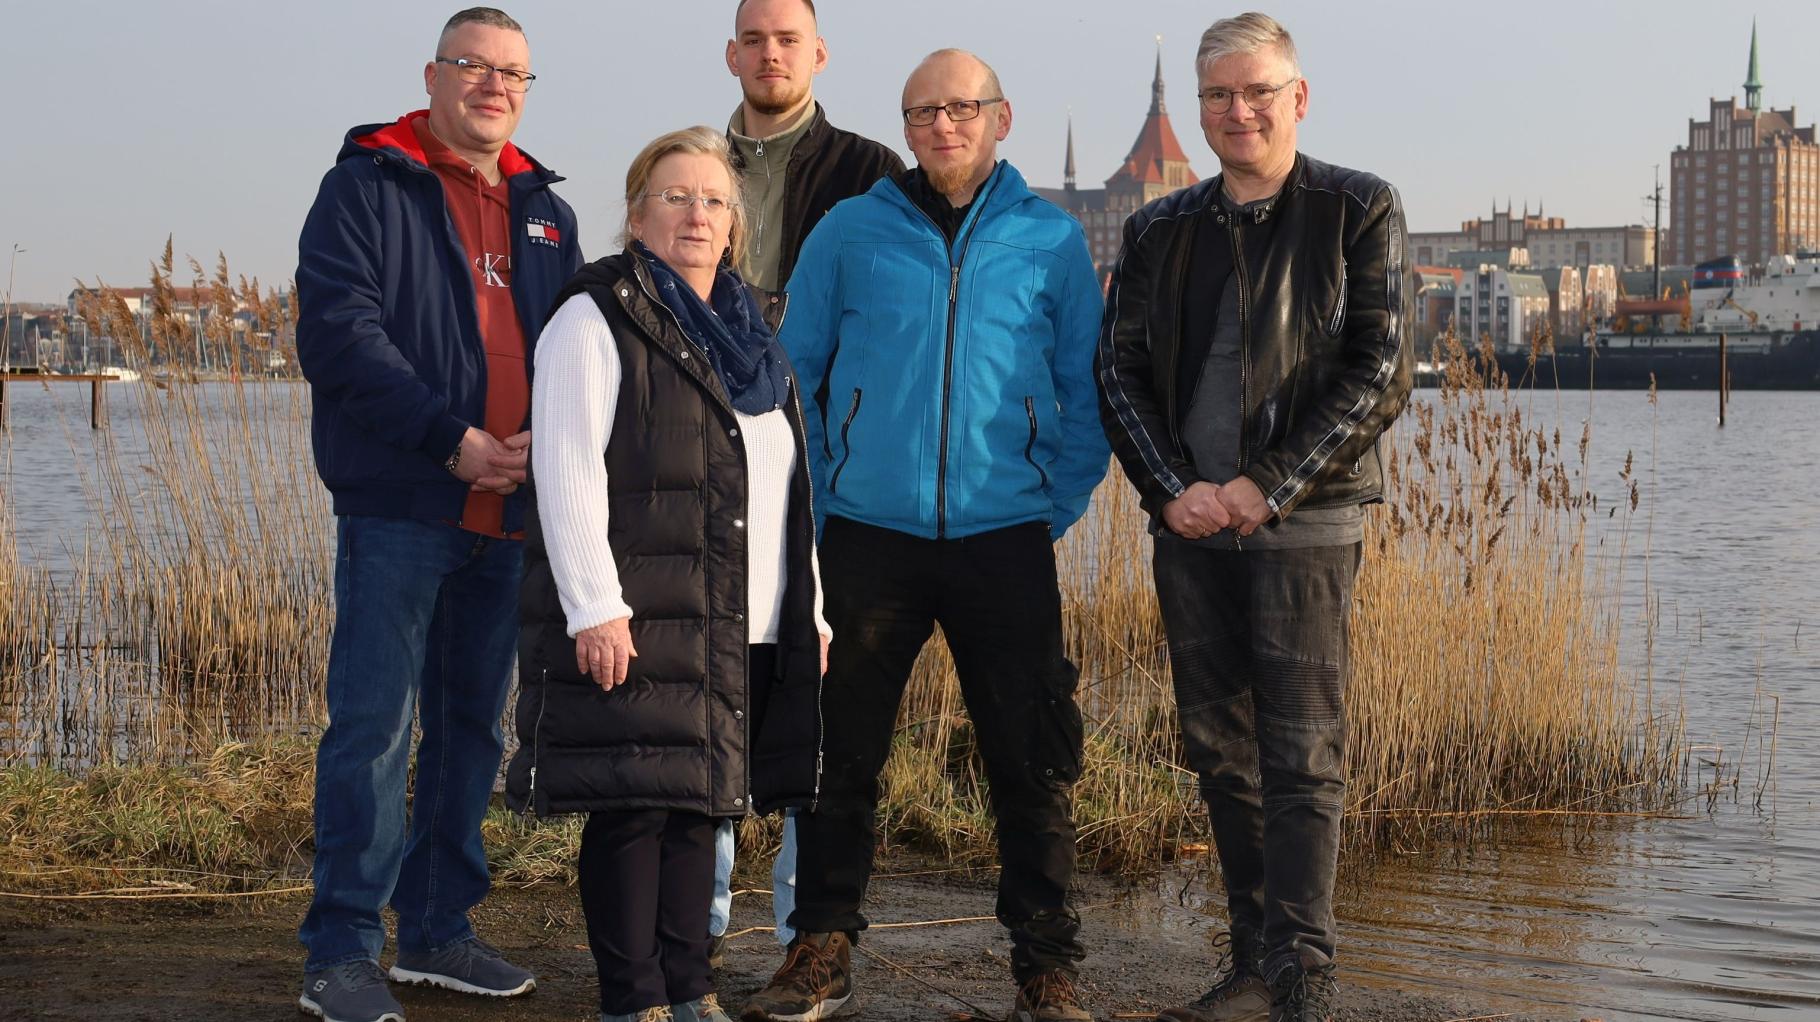 Freie Wähler Rostock schicken fünf Kandidaten ins Rennen